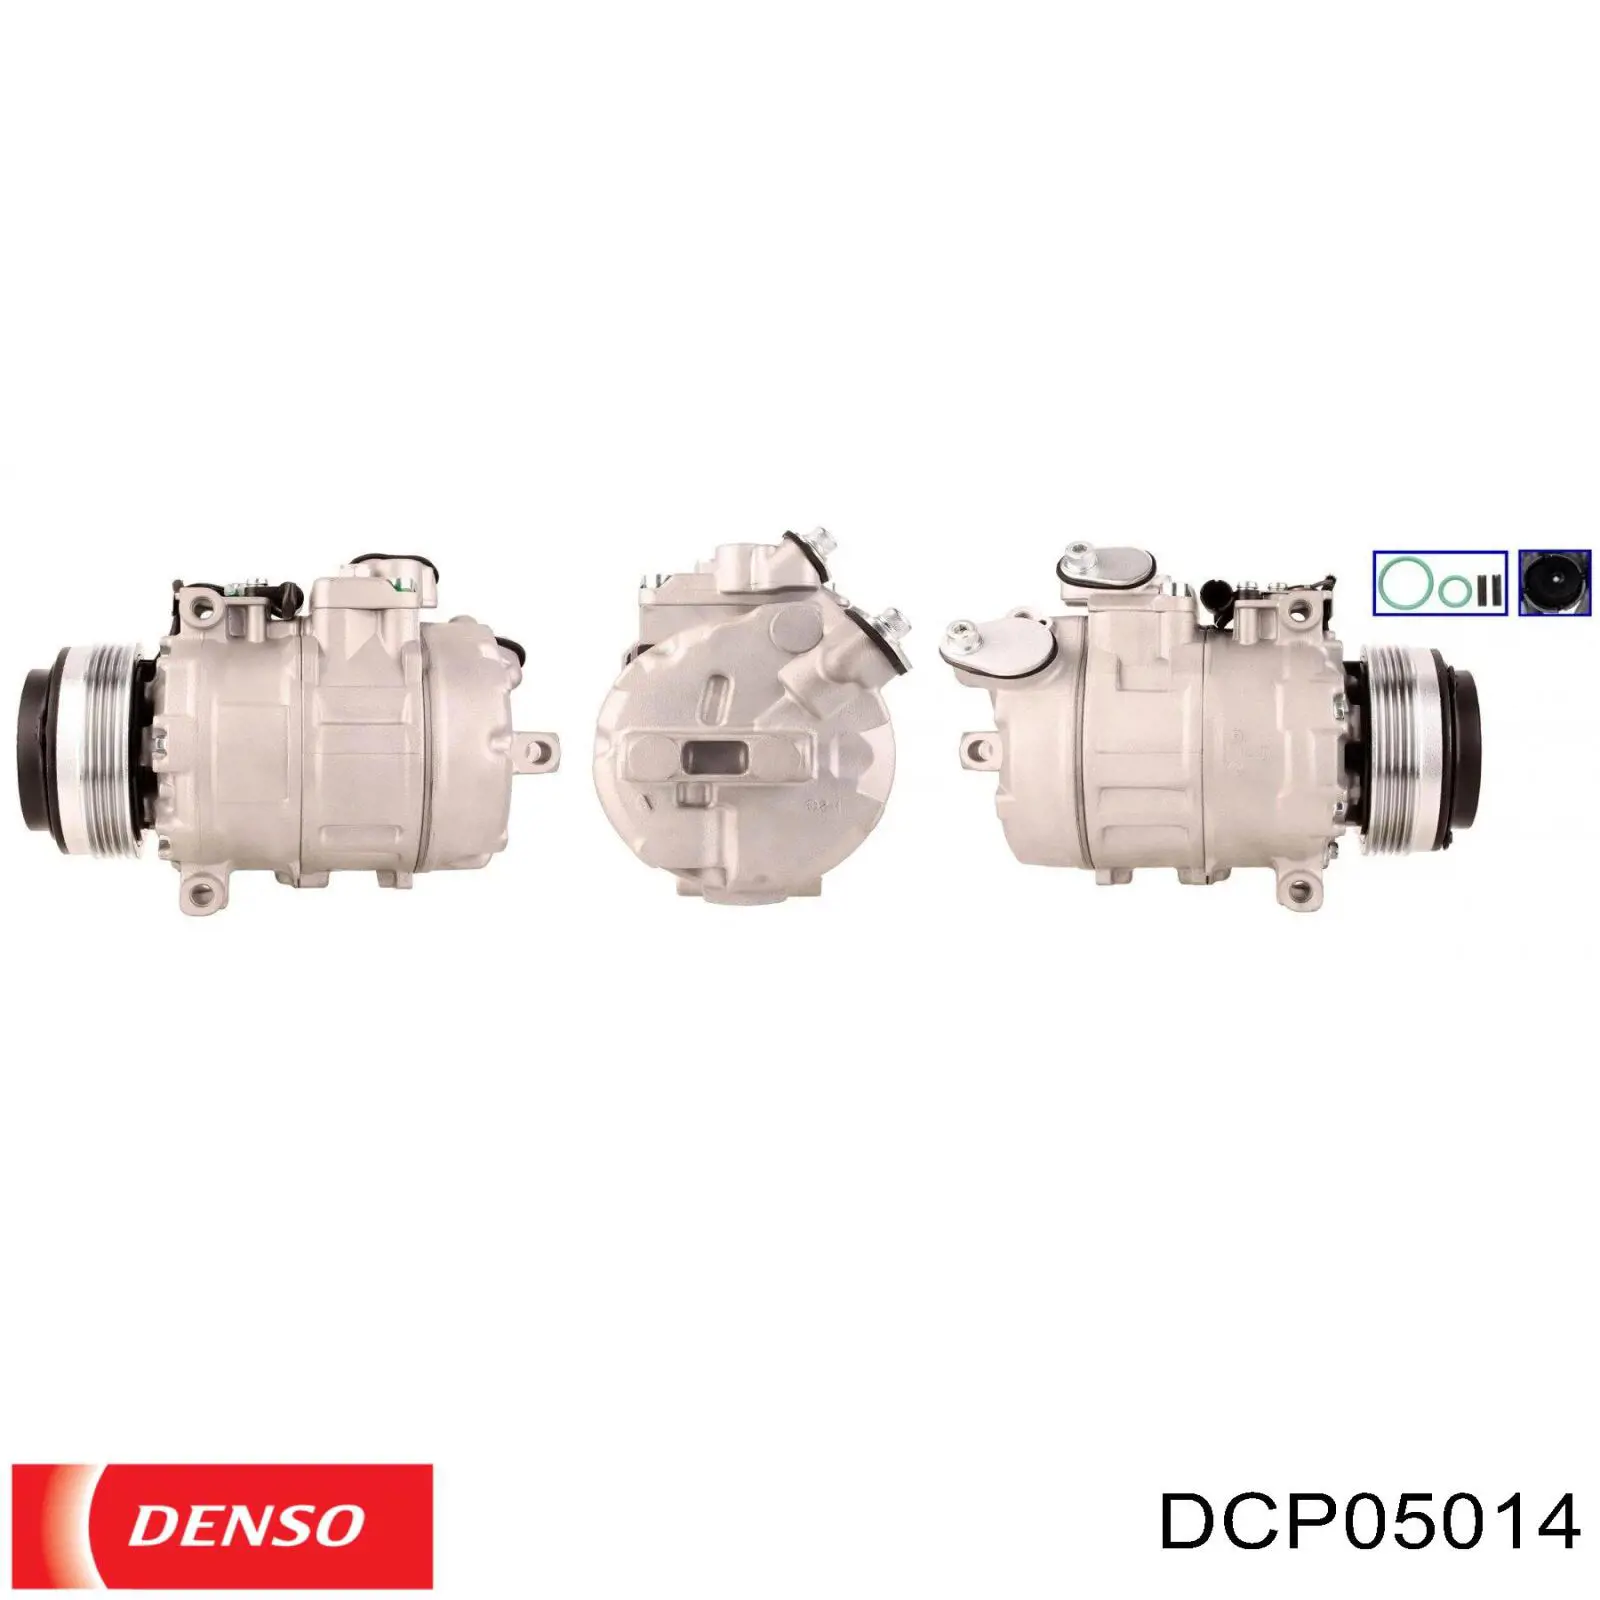 DCP05014 Denso compresor de aire acondicionado